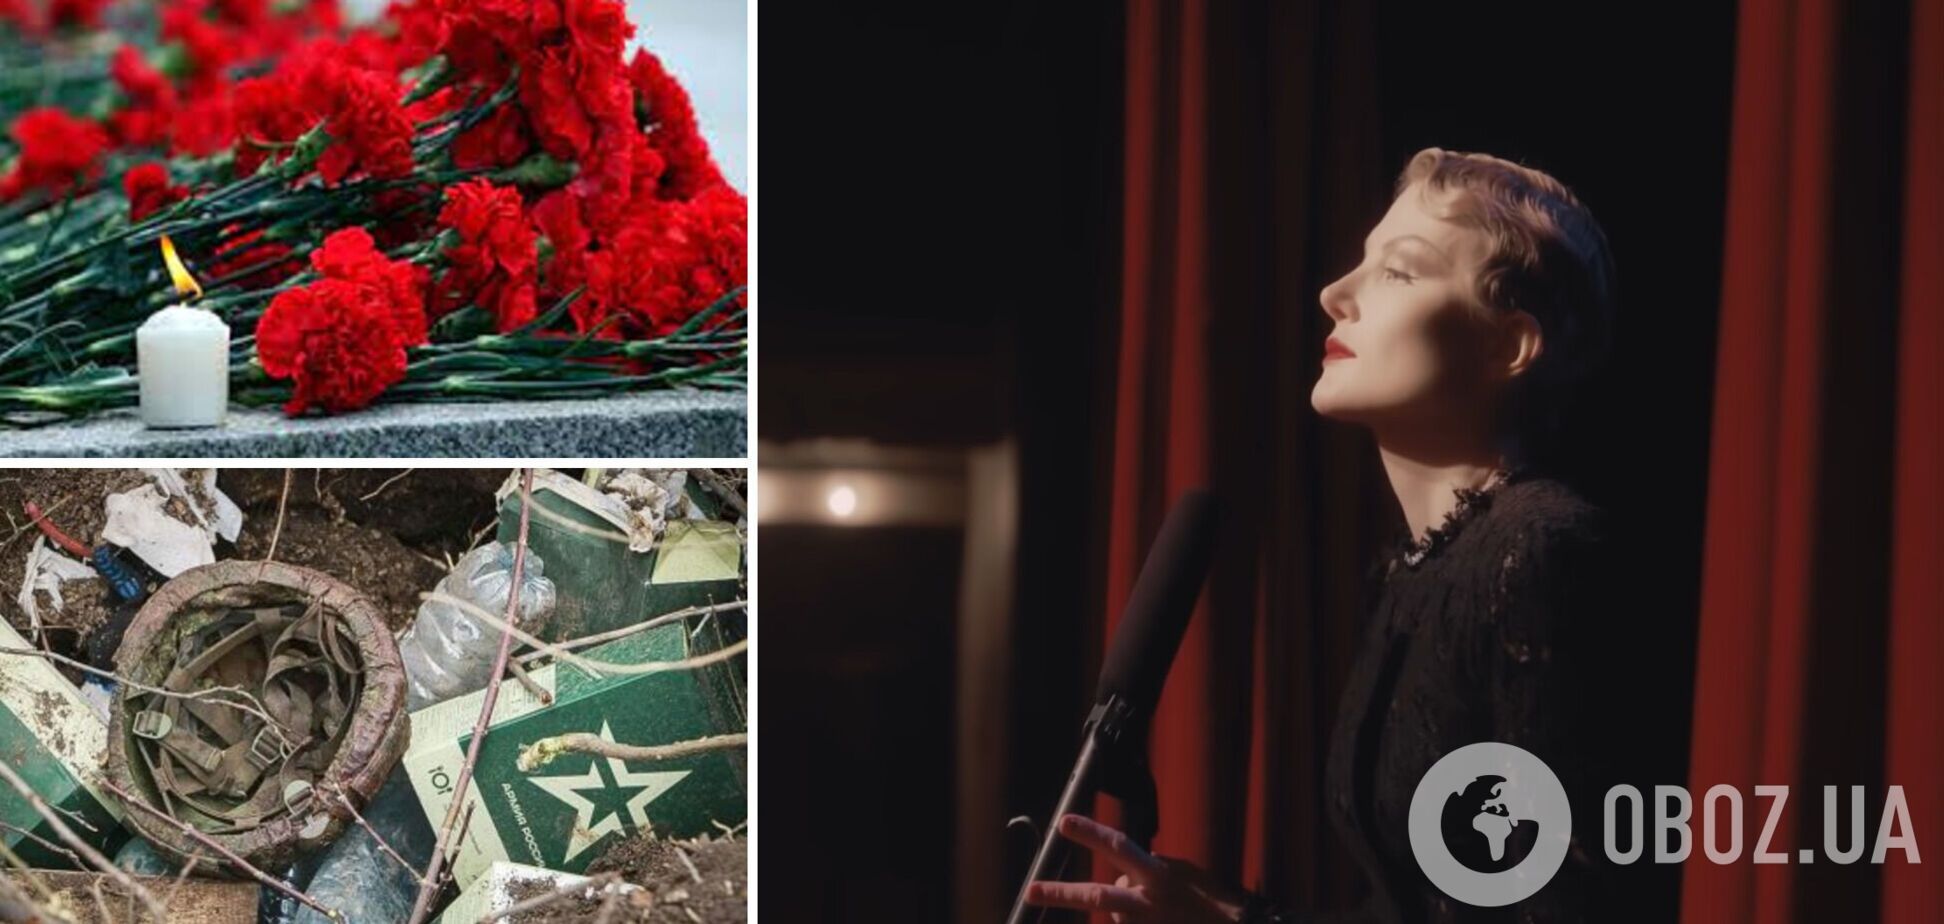 'Где цветы?' Рената Литвинова перепела знаменитую антивоенную песню Марлен Дитрих и вызвала восторг. В чем ее особенность